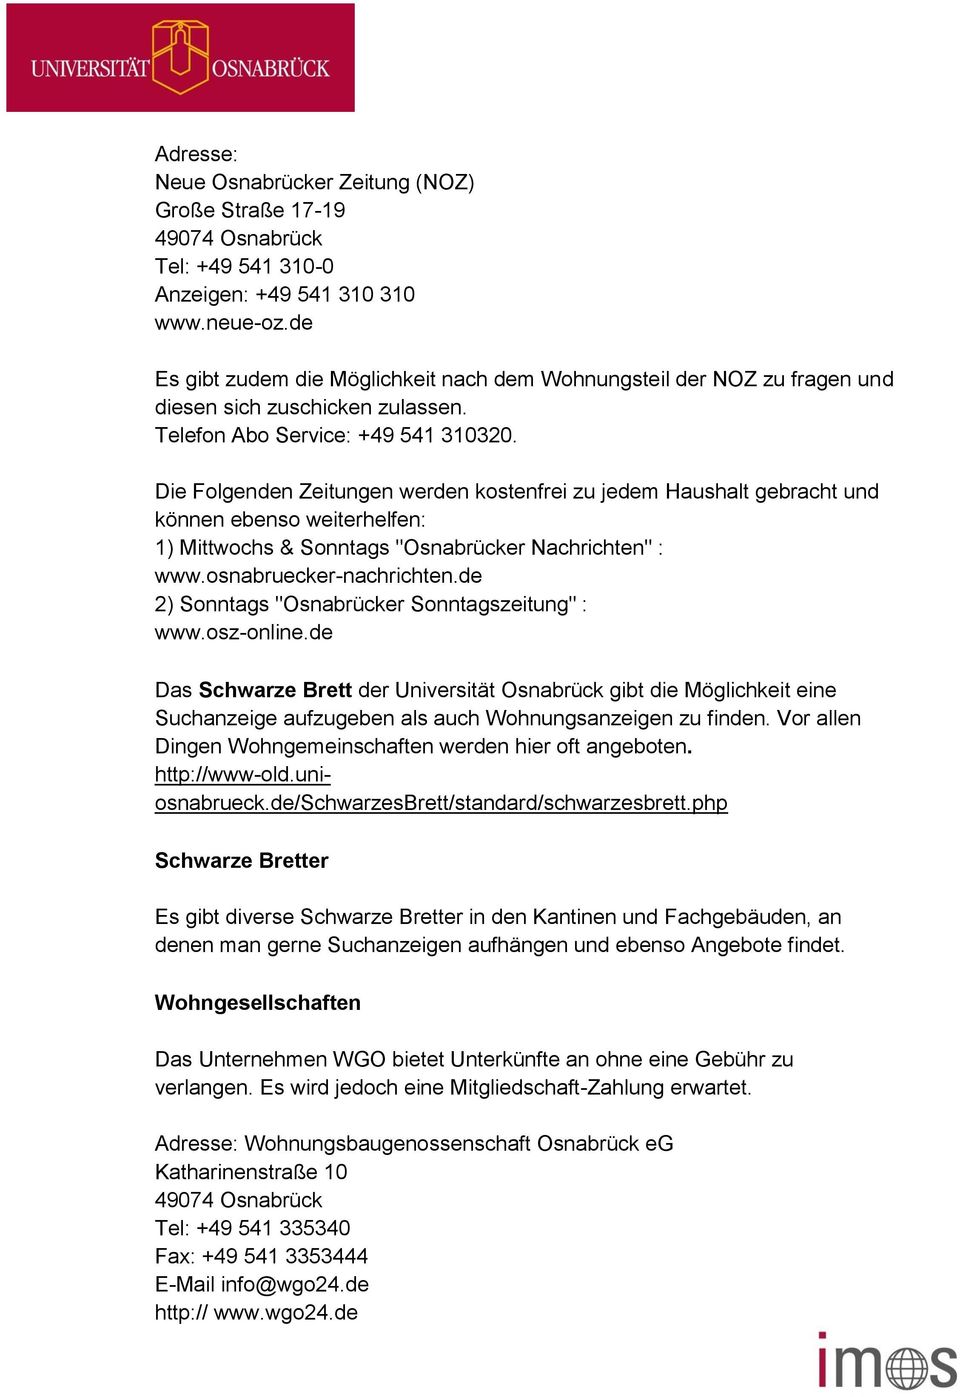 Die Folgenden Zeitungen werden kostenfrei zu jedem Haushalt gebracht und können ebenso weiterhelfen: 1) Mittwochs & Sonntags "Osnabrücker Nachrichten" : www.osnabruecker-nachrichten.